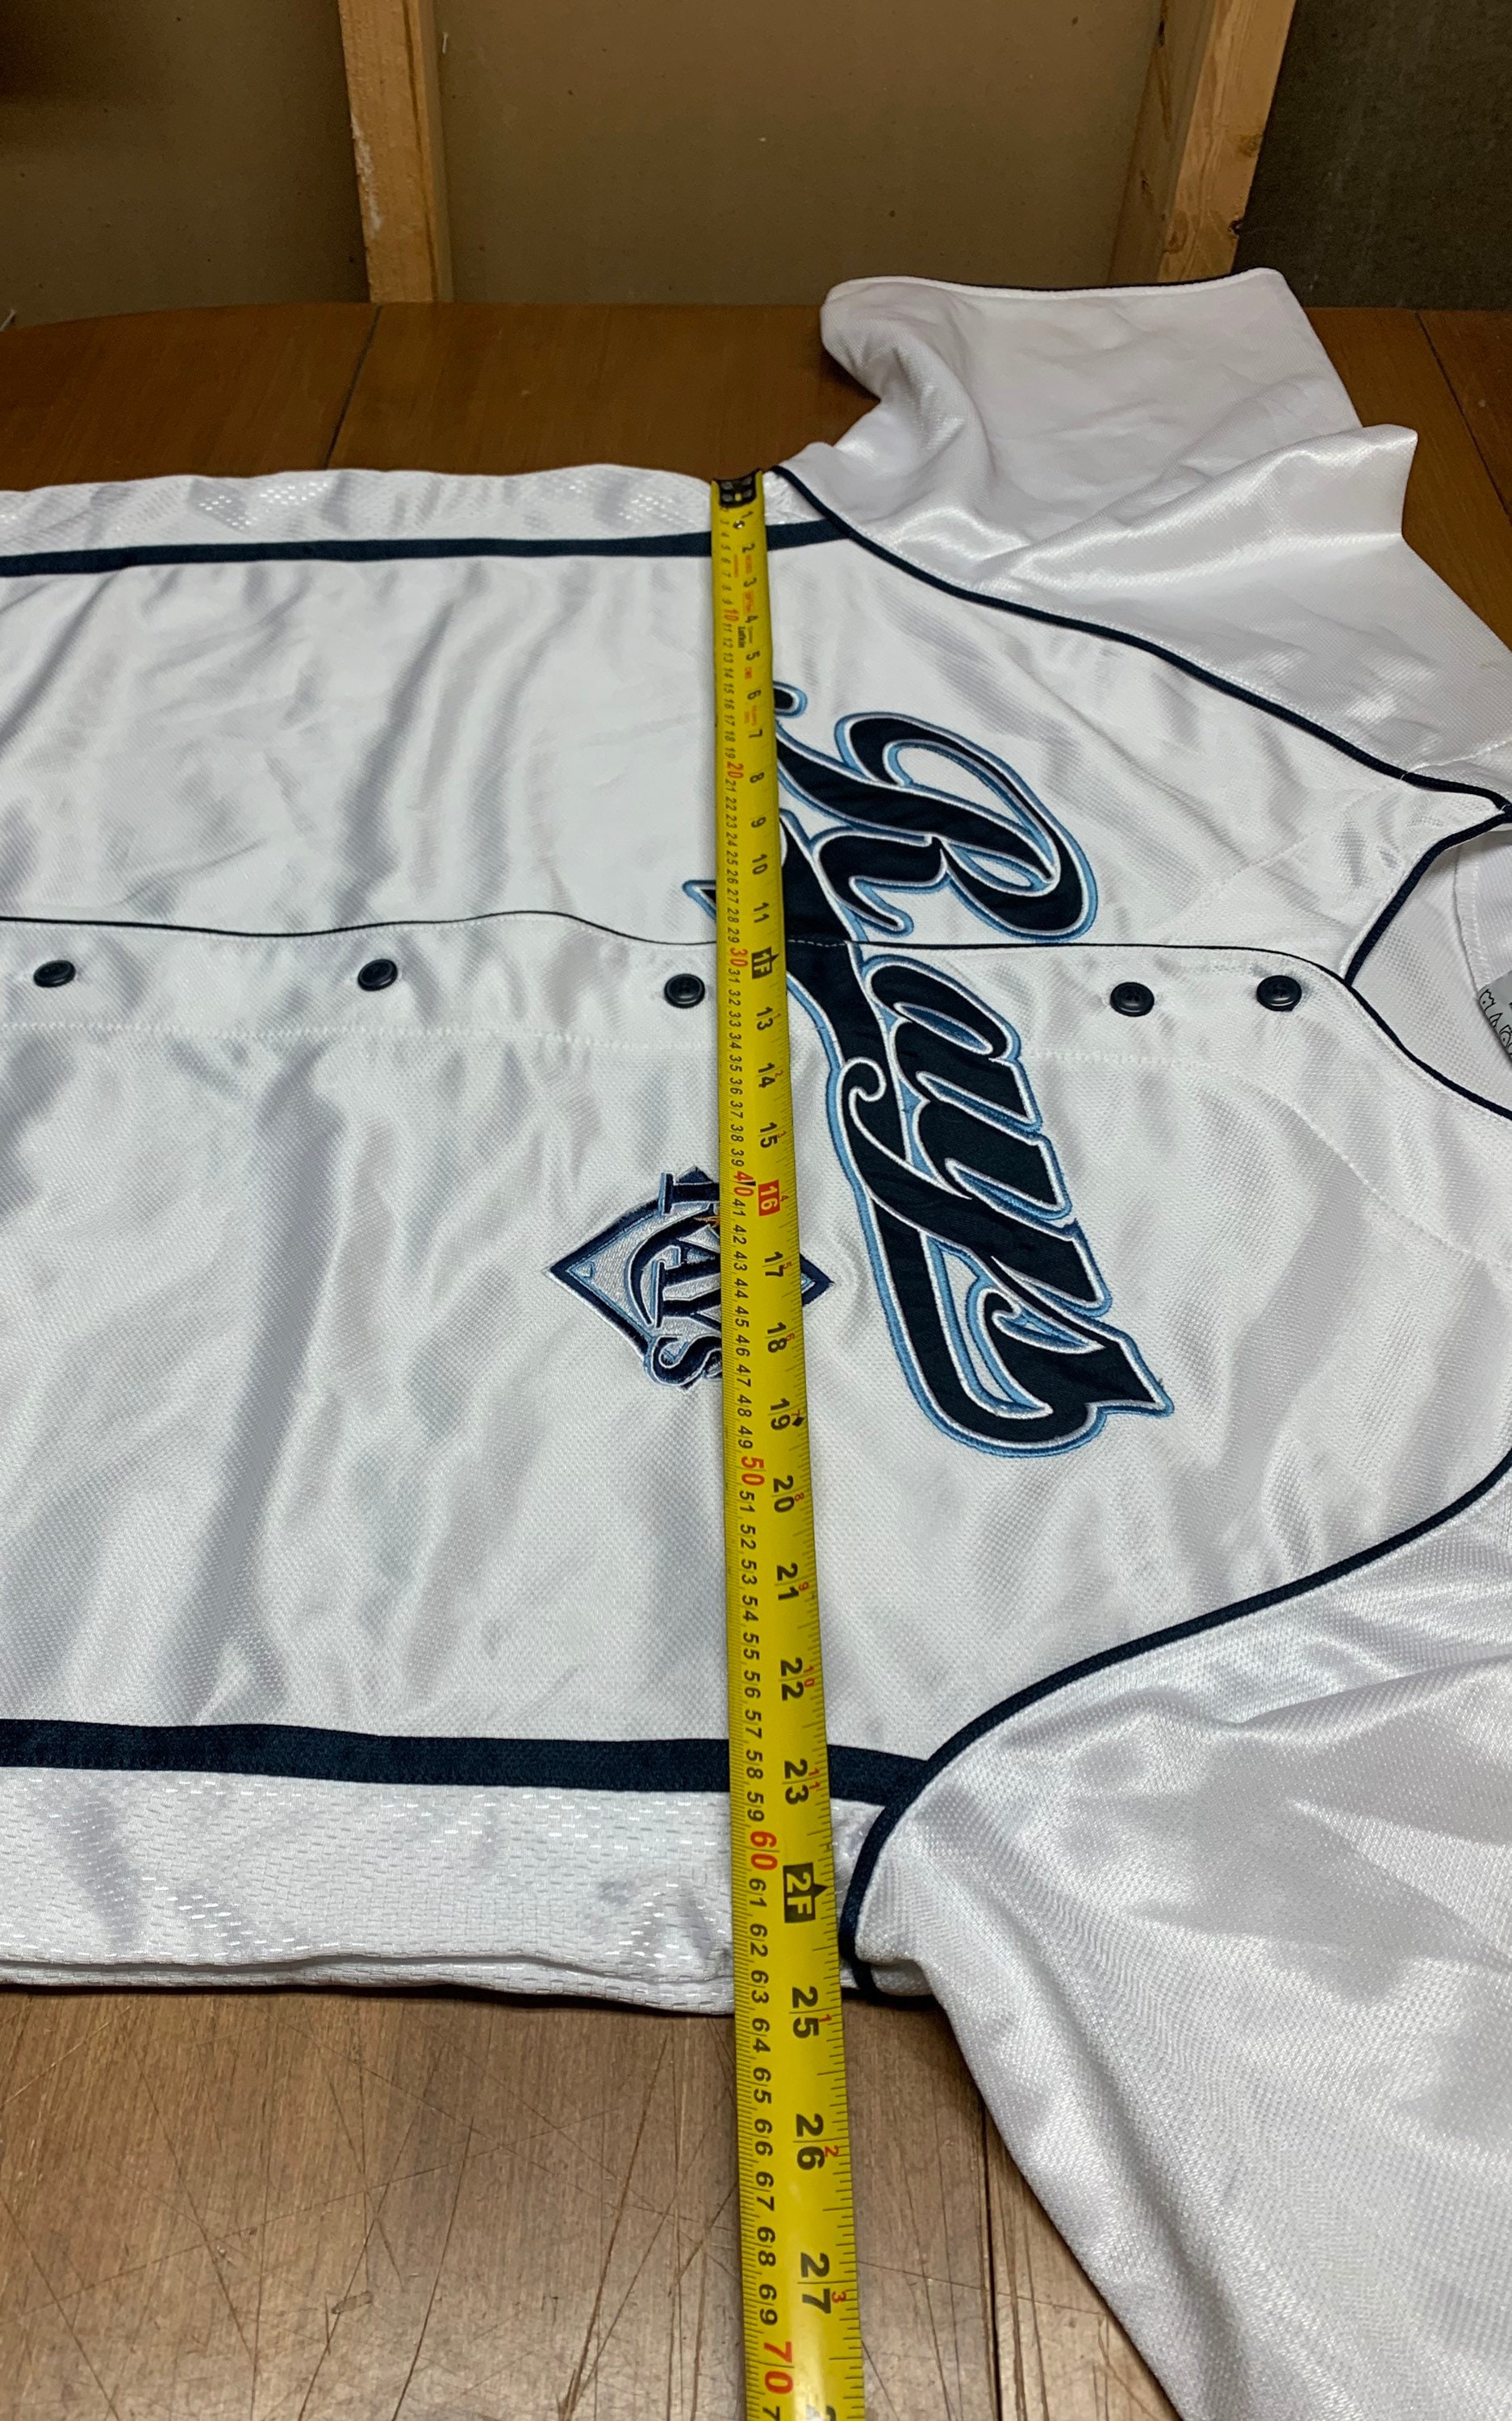 1997 Ken Griffey Jr. Mariners Baseball Jersey Made - Depop